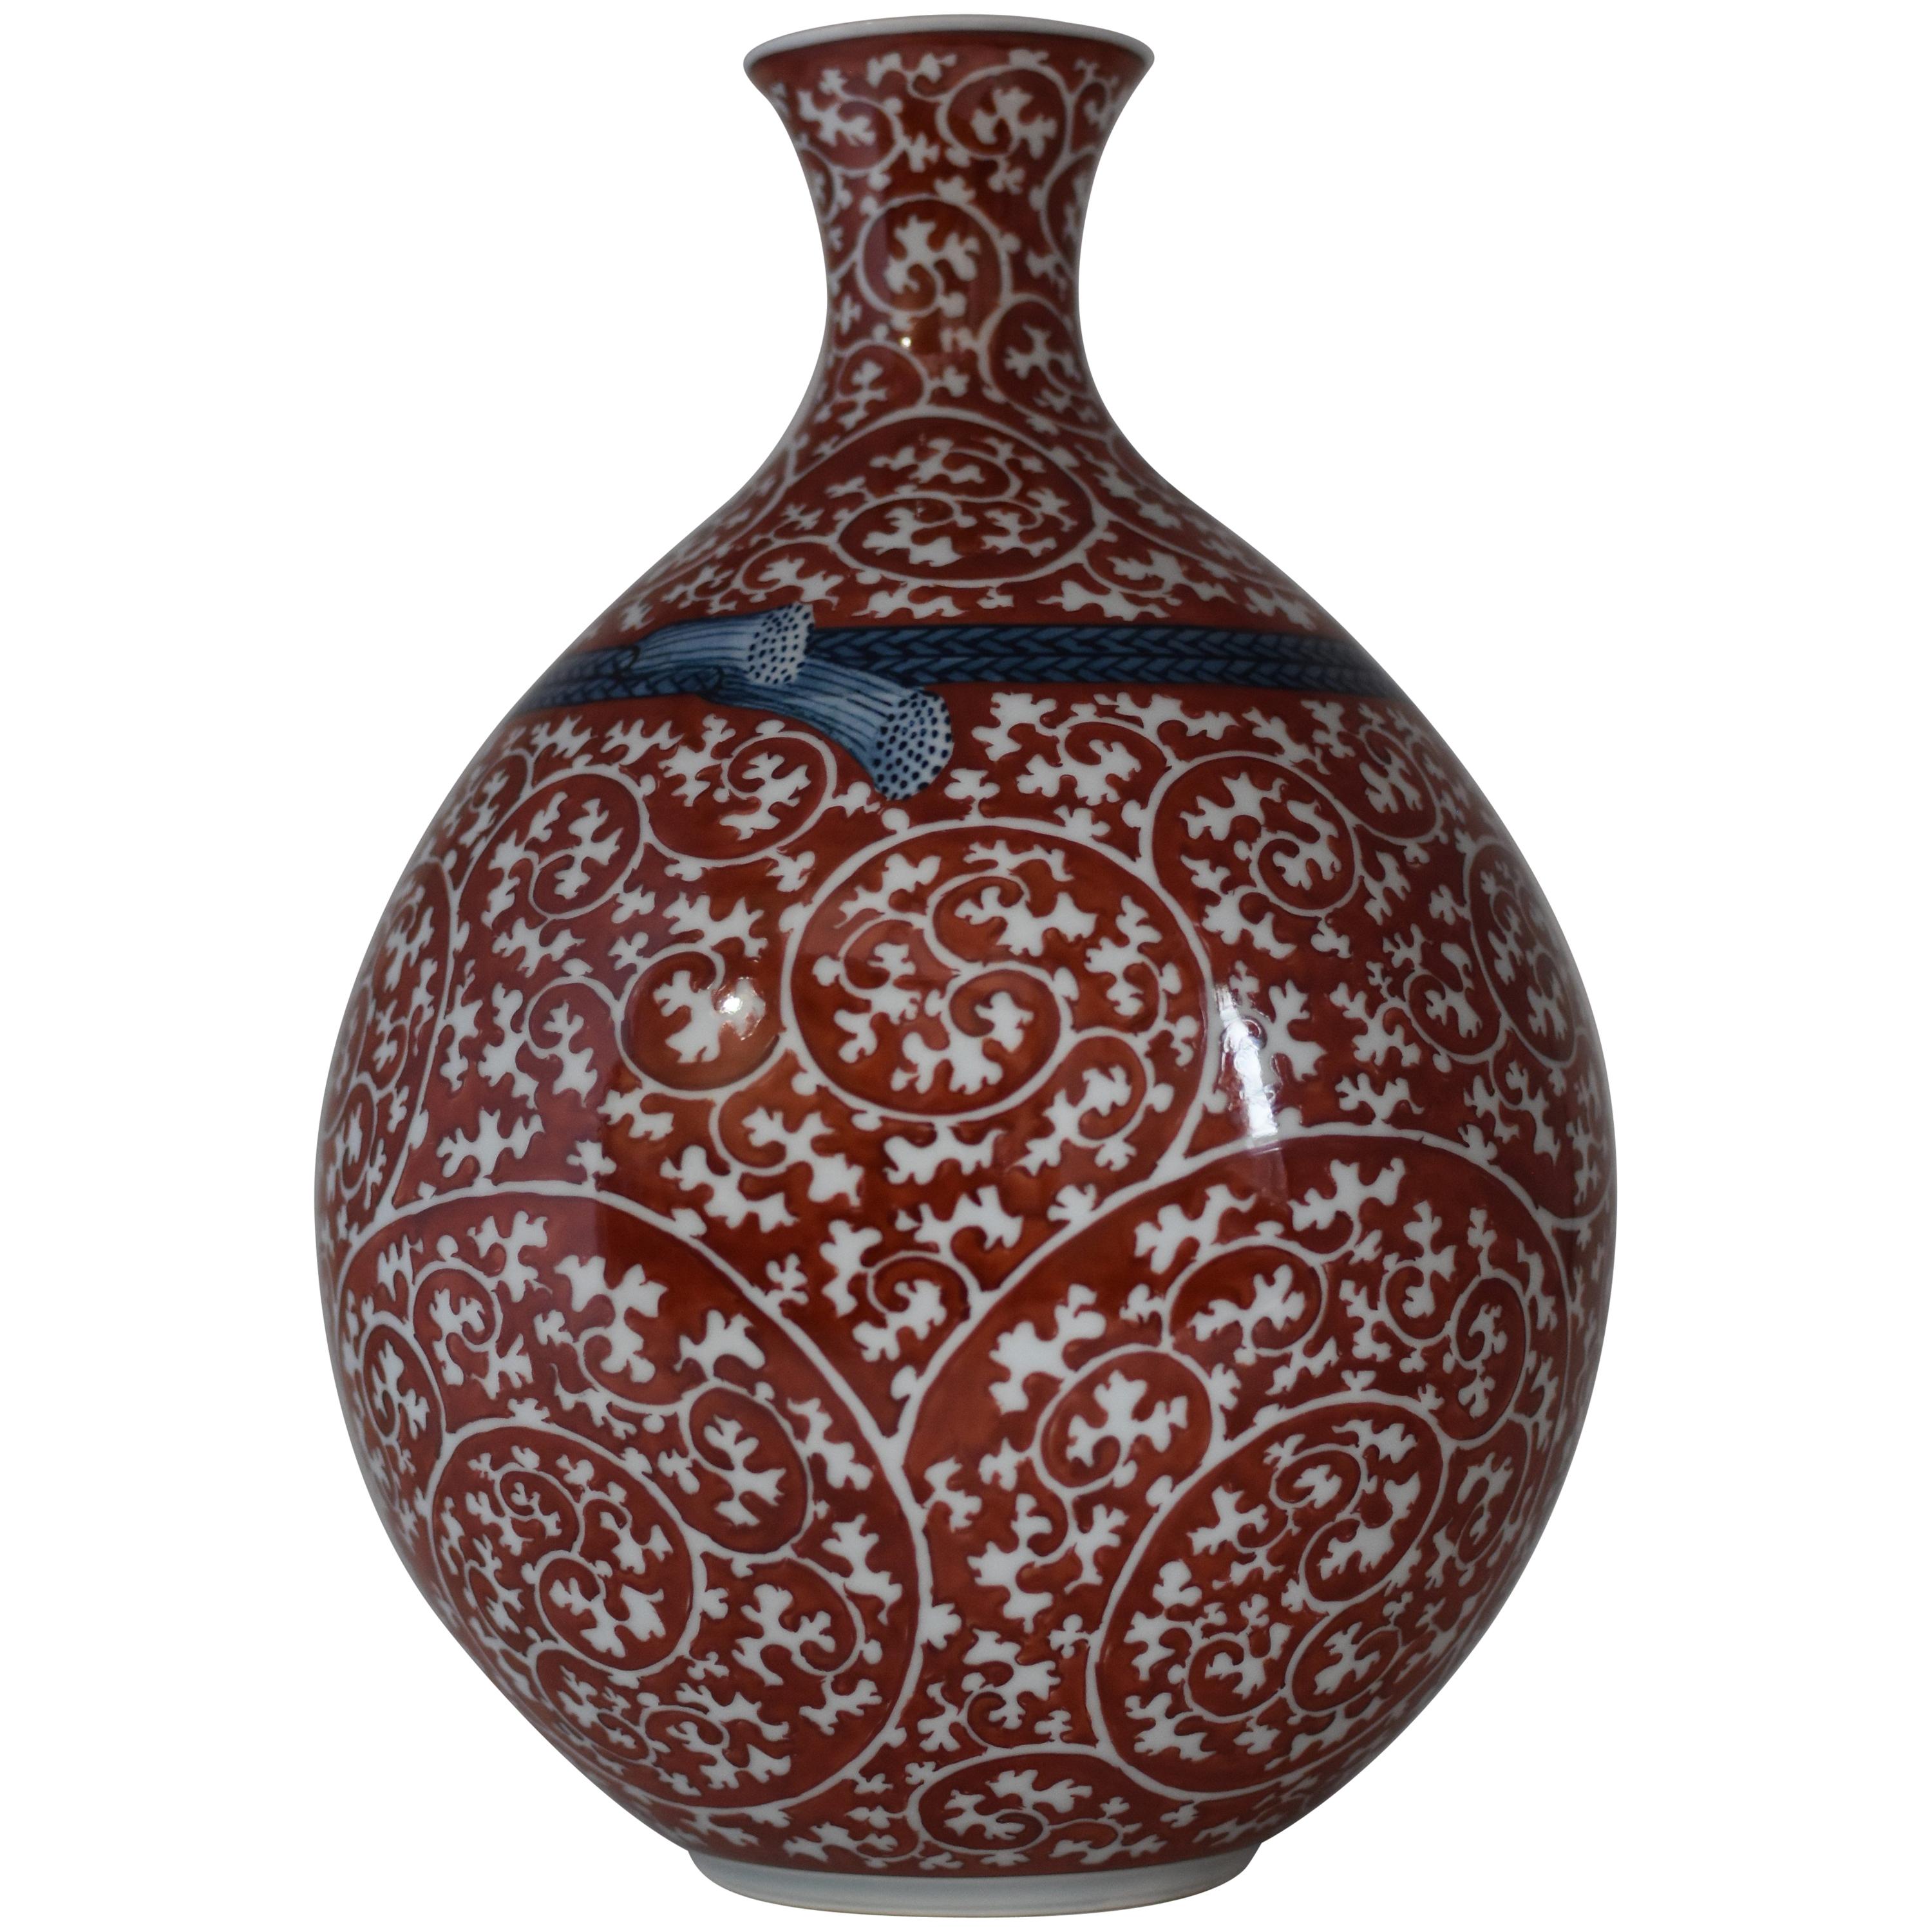 Vase japonais contemporain en porcelaine rouge et blanche par un maître artiste, 3 pièces